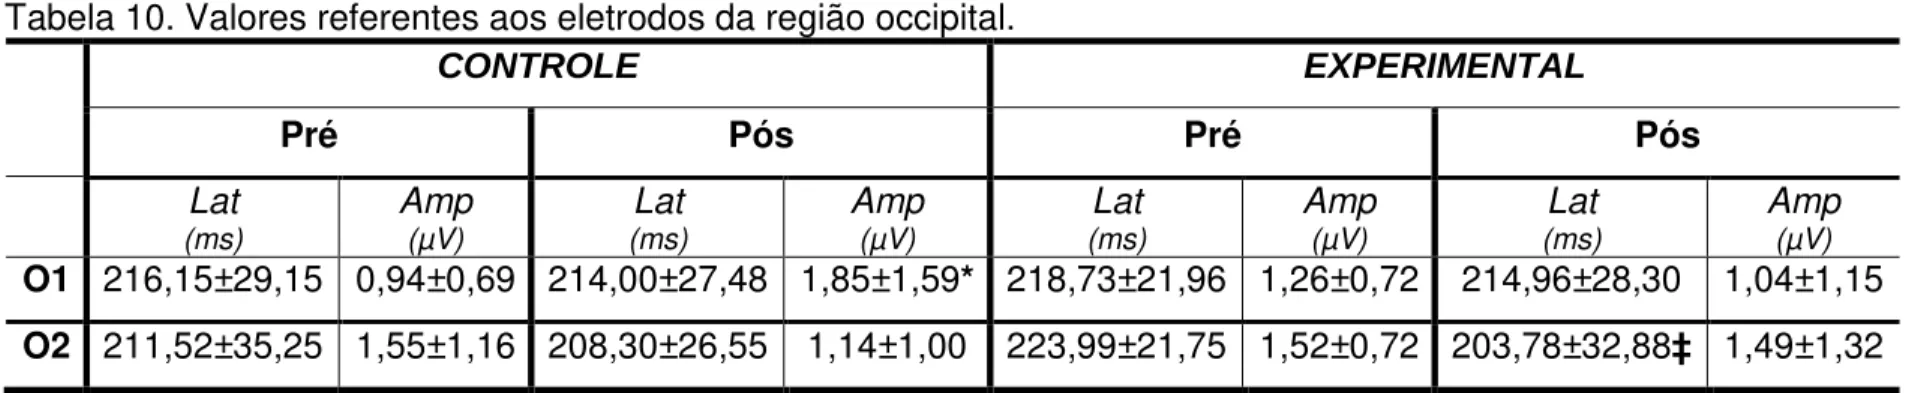 Tabela 10. Valores referentes aos eletrodos da região occipital.  CONTROLE  EXPERIMENTAL  Pré  Pós  Pré  Pós  Lat  (ms)  Amp (µV)  Lat  (ms)  Amp (µV) Lat  (ms)  Amp (µV) Lat  (ms)  Amp (µV) O1  216,15±29,15  0,94±0,69  214,00±27,48  1,85±1,59*  218,73±21,